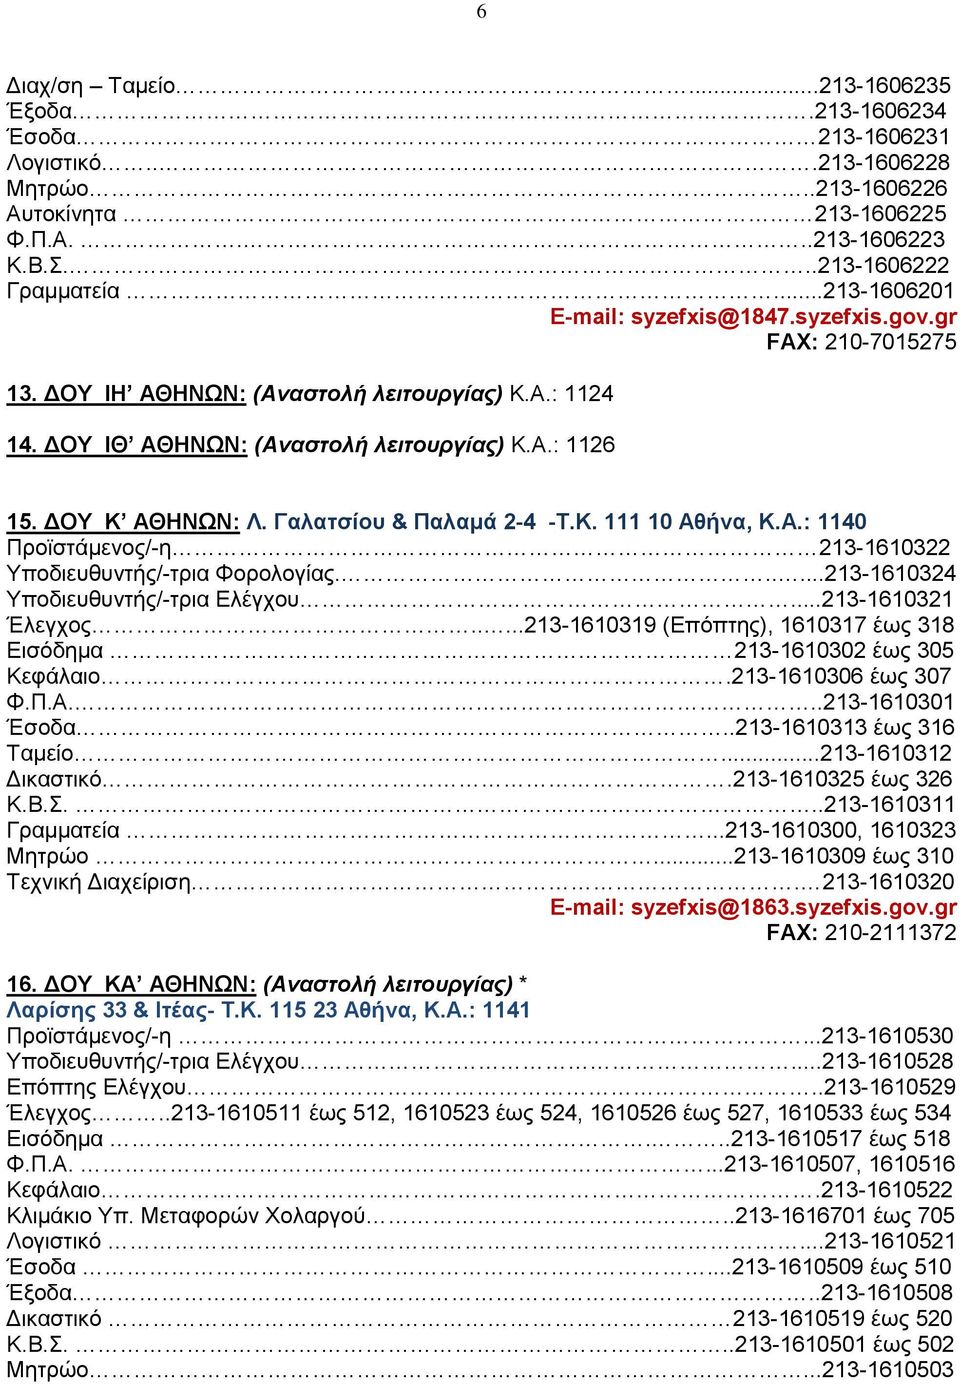 Γαλατσίου & Παλαμά 2-4 -T.K. 111 10 Αθήνα, Κ.Α.: 1140 Προϊστάμενος/-η 213-1610322 Υποδιευθυντής/-τρια Φορολογίας......213-1610324 Υποδιευθυντής/-τρια Ελέγχου...213-1610321 Έλεγχος.